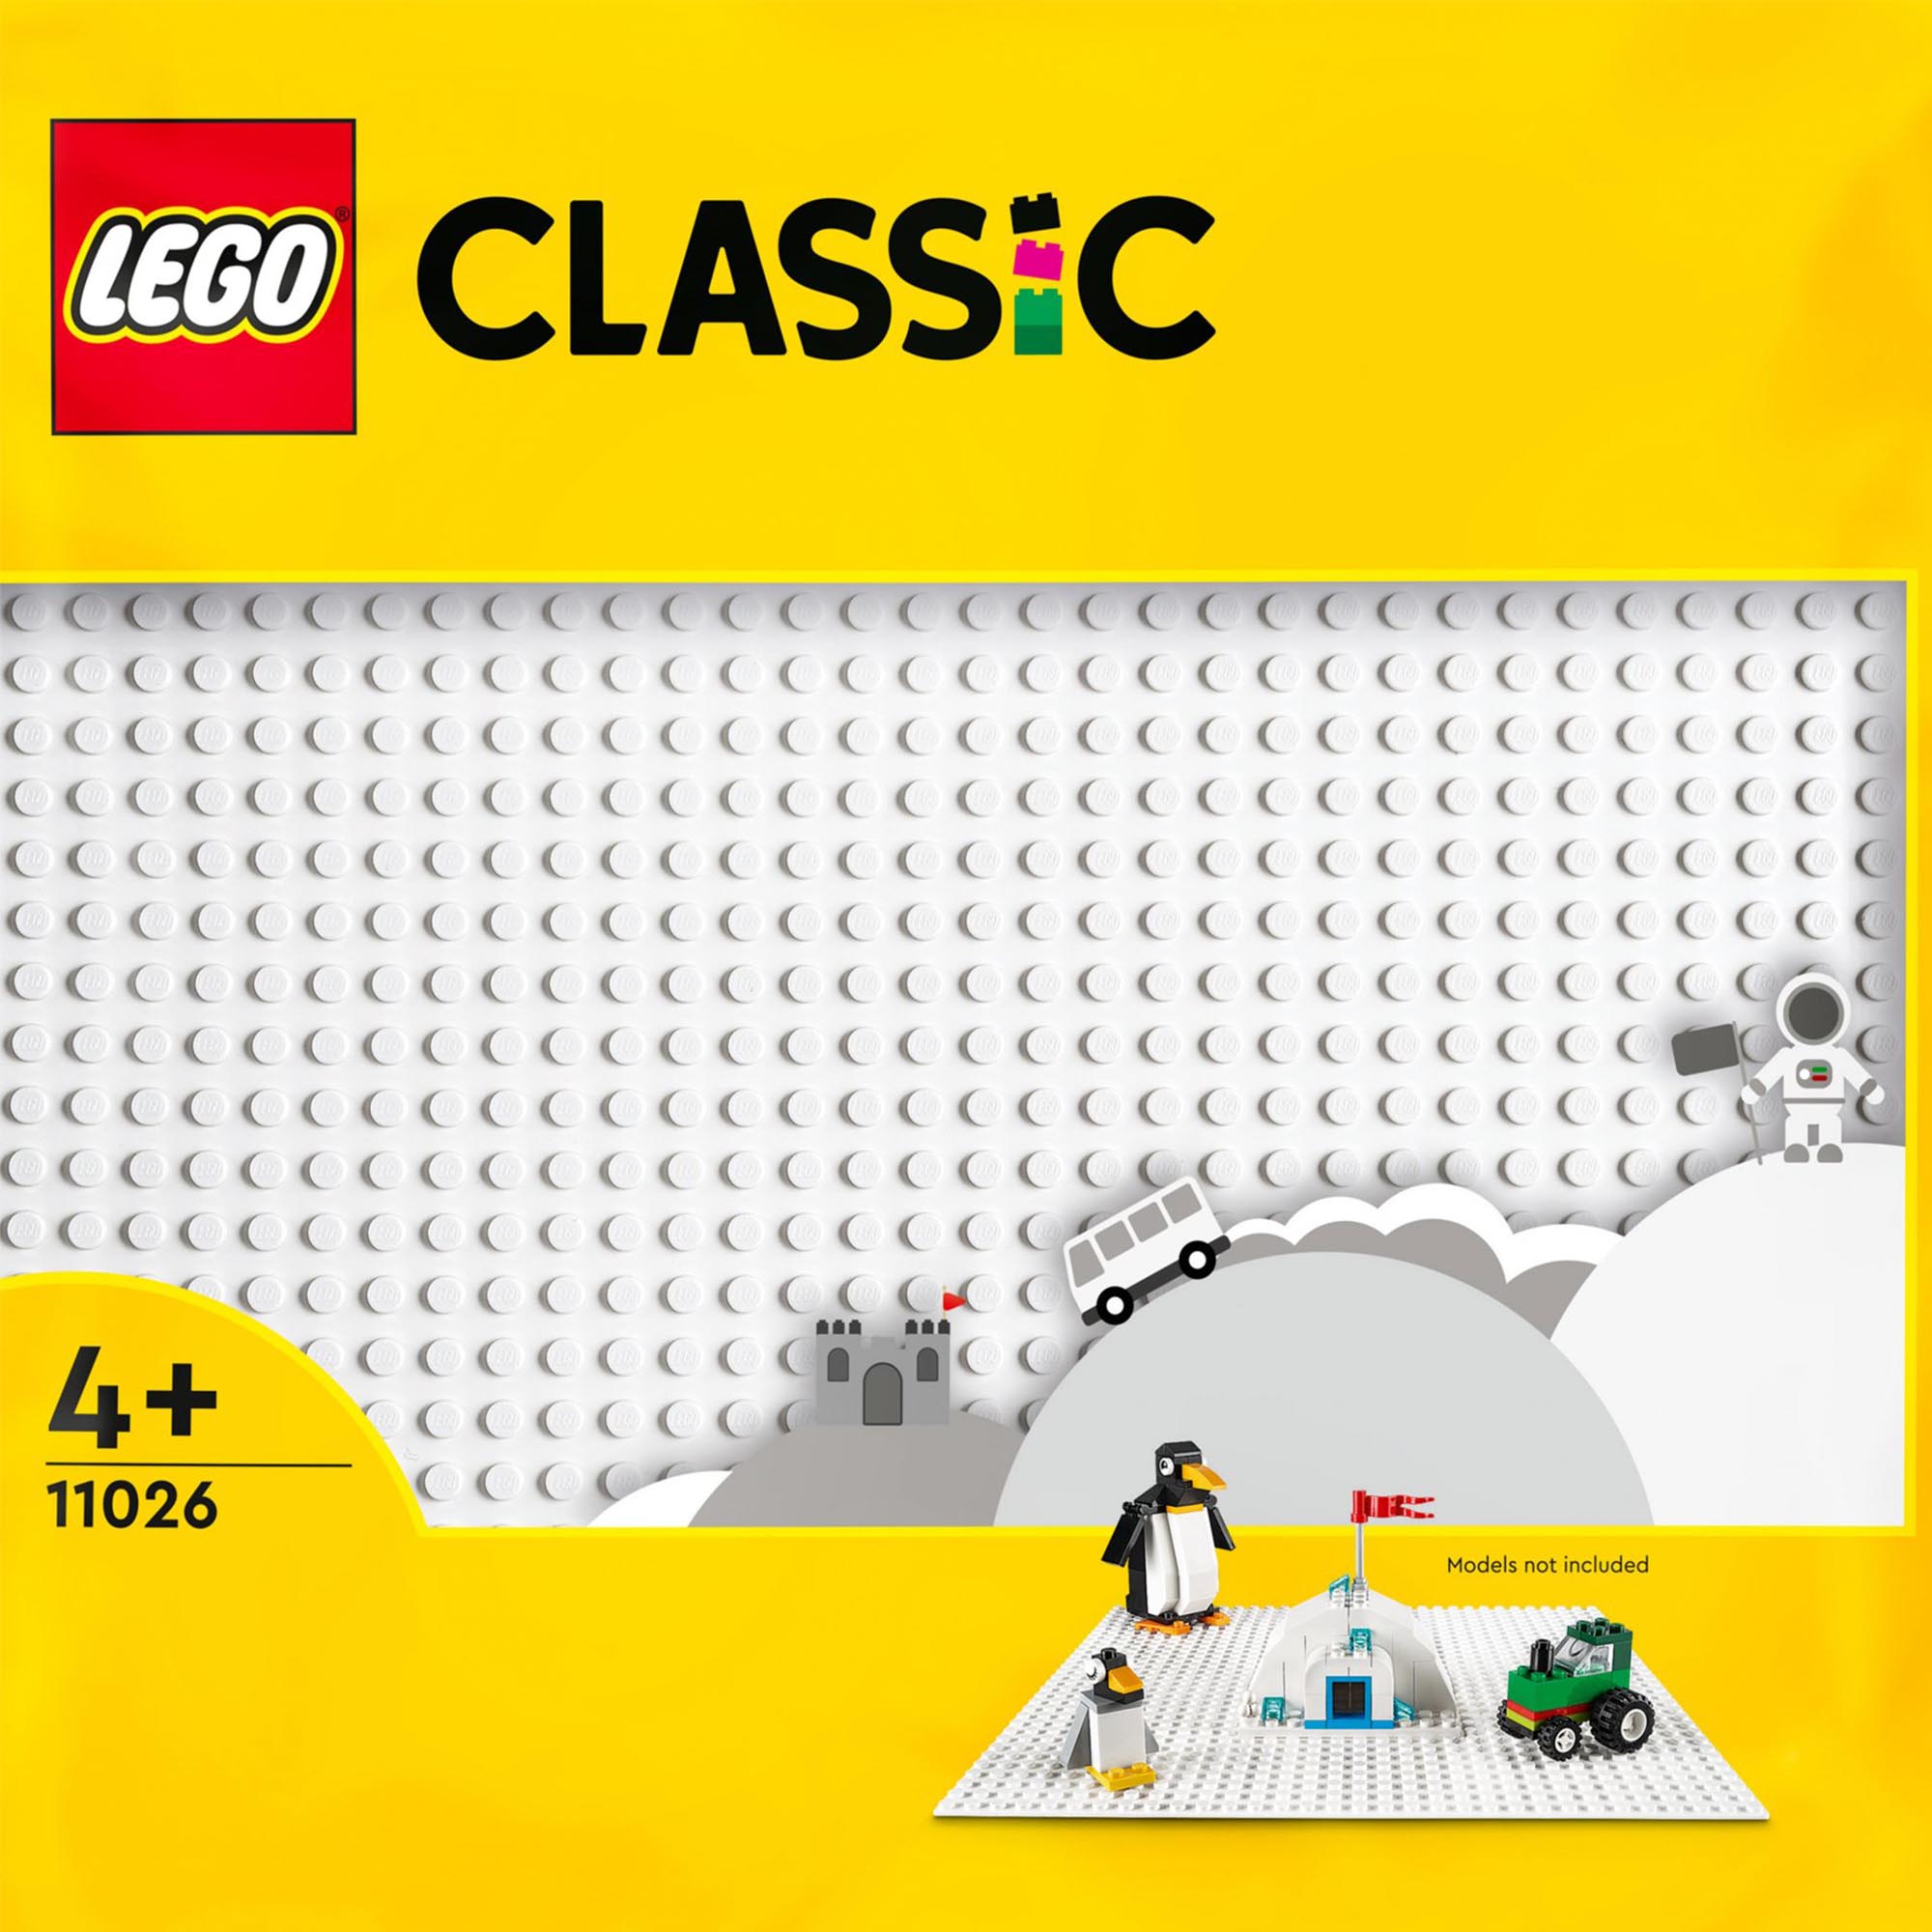 LEGO 11026 Classic Base Bianca, Tavola per Costruzioni Quadrata con 32x32 Botton 11026, , large